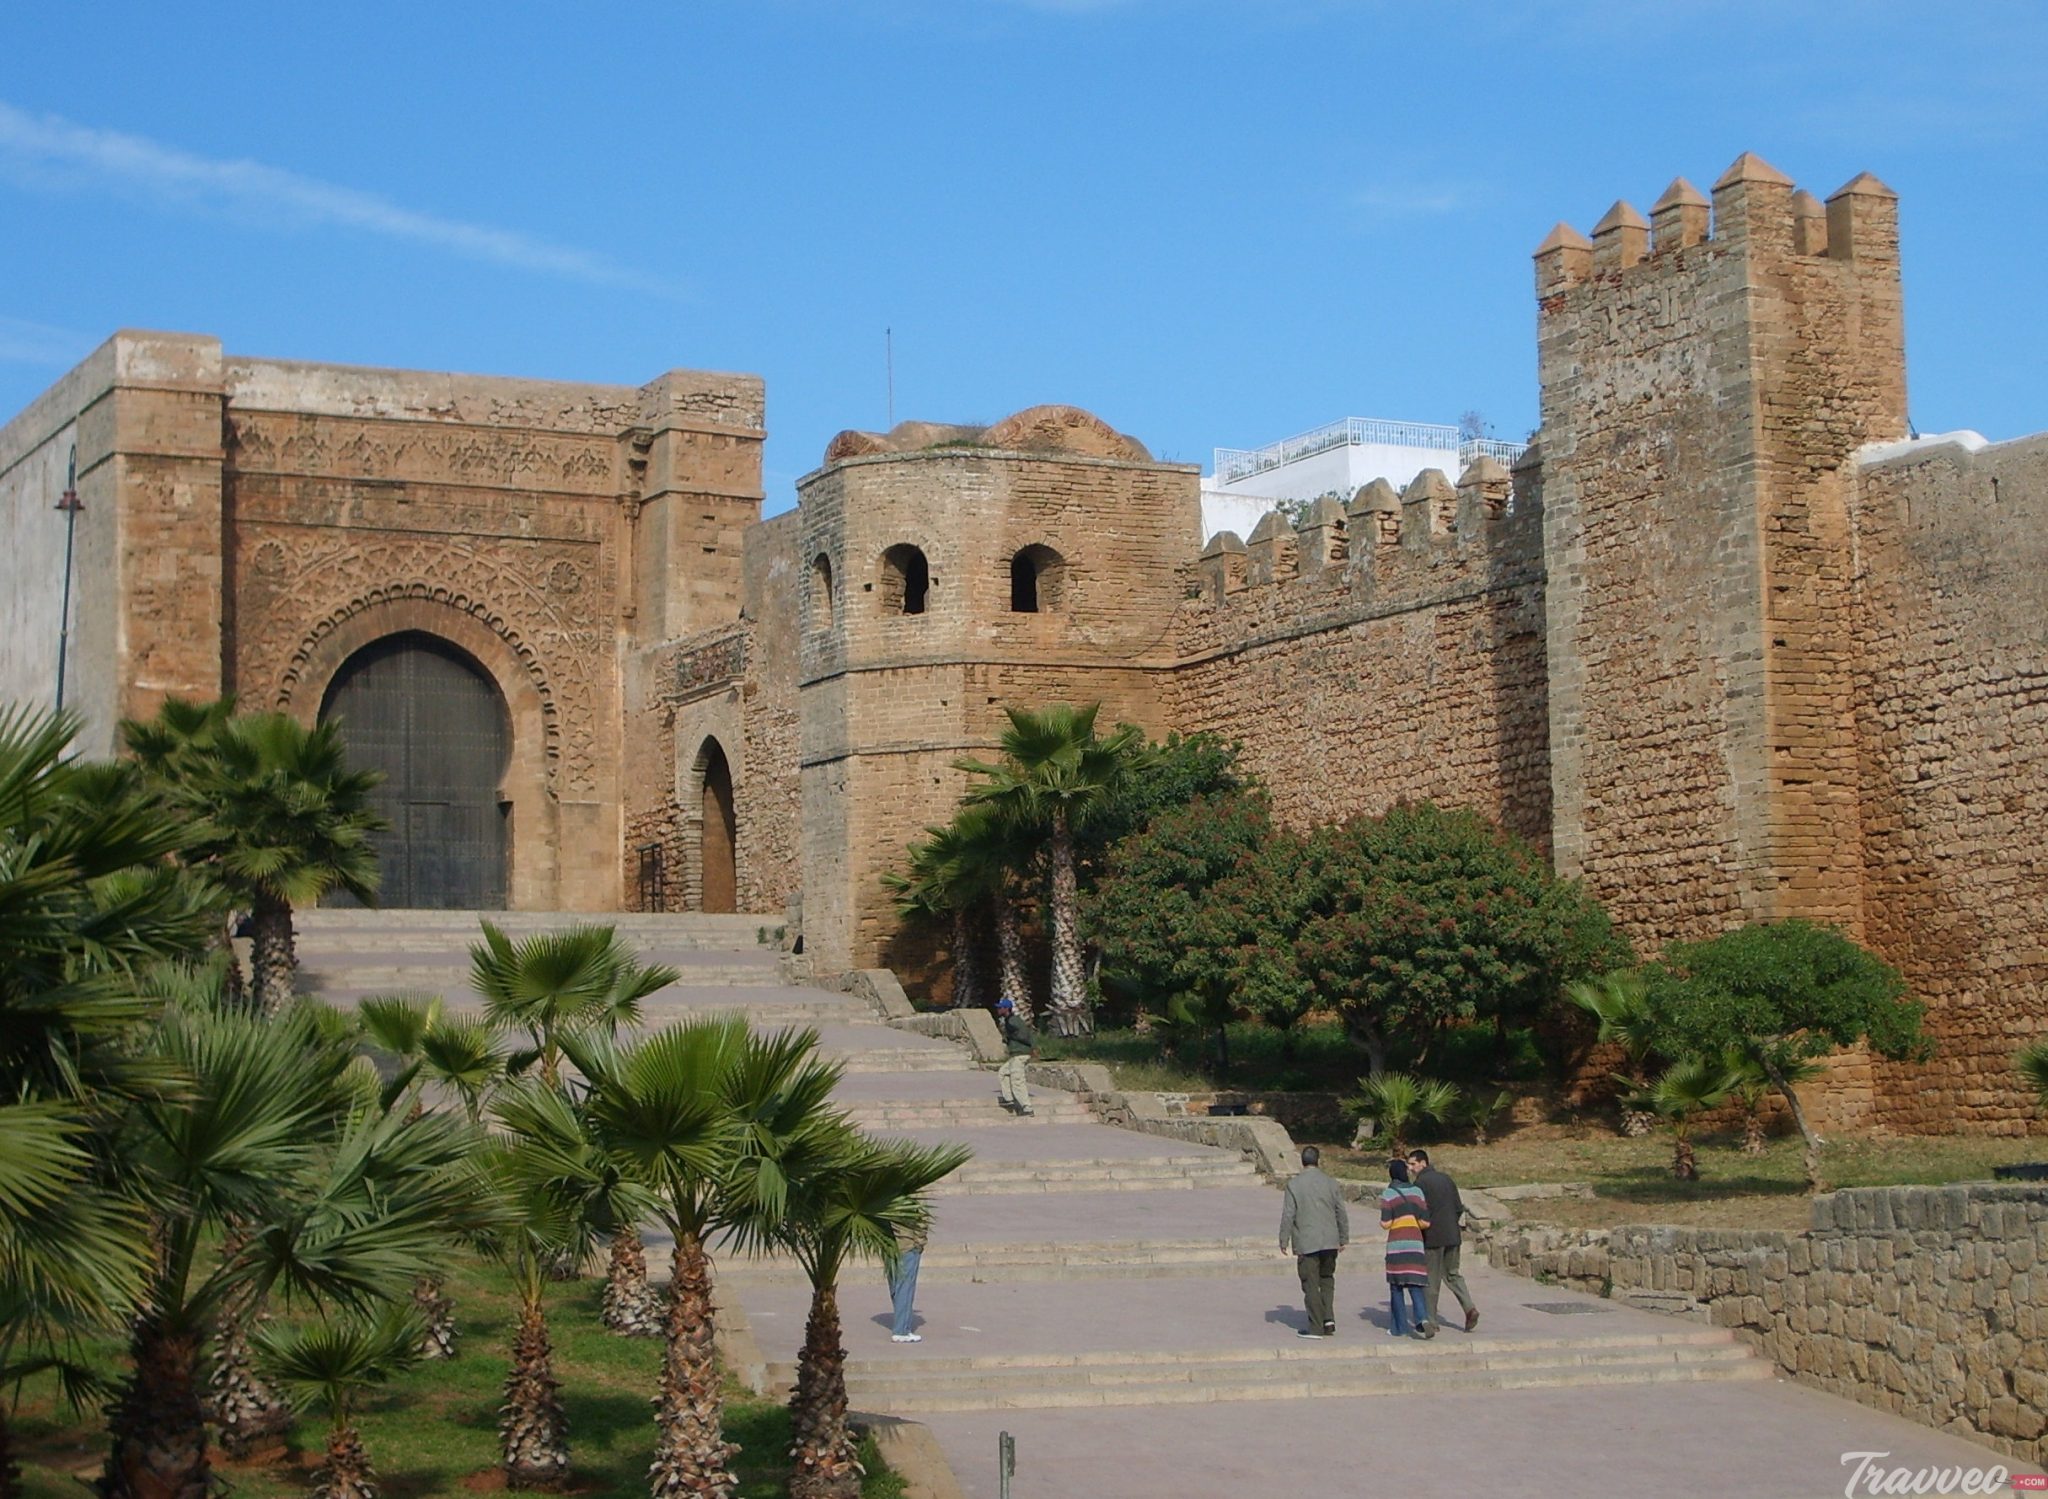  Tourism in Rabat